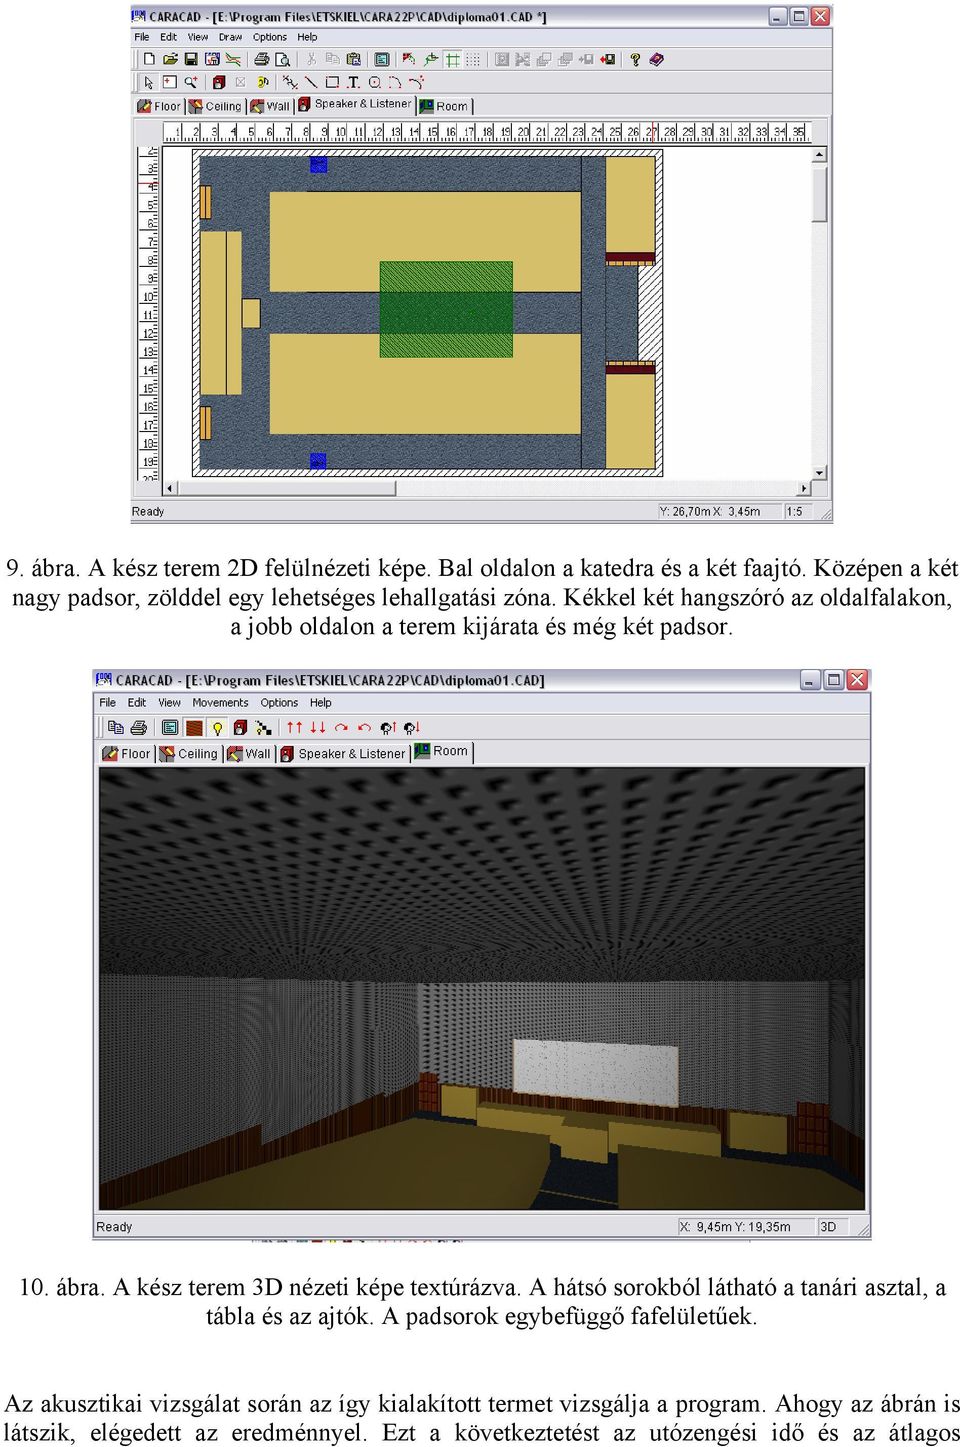 Kékkel két hangszóró az oldalfalakon, a jobb oldalon a terem kijárata és még két padsor. 10. ábra. A kész terem 3D nézeti képe textúrázva.